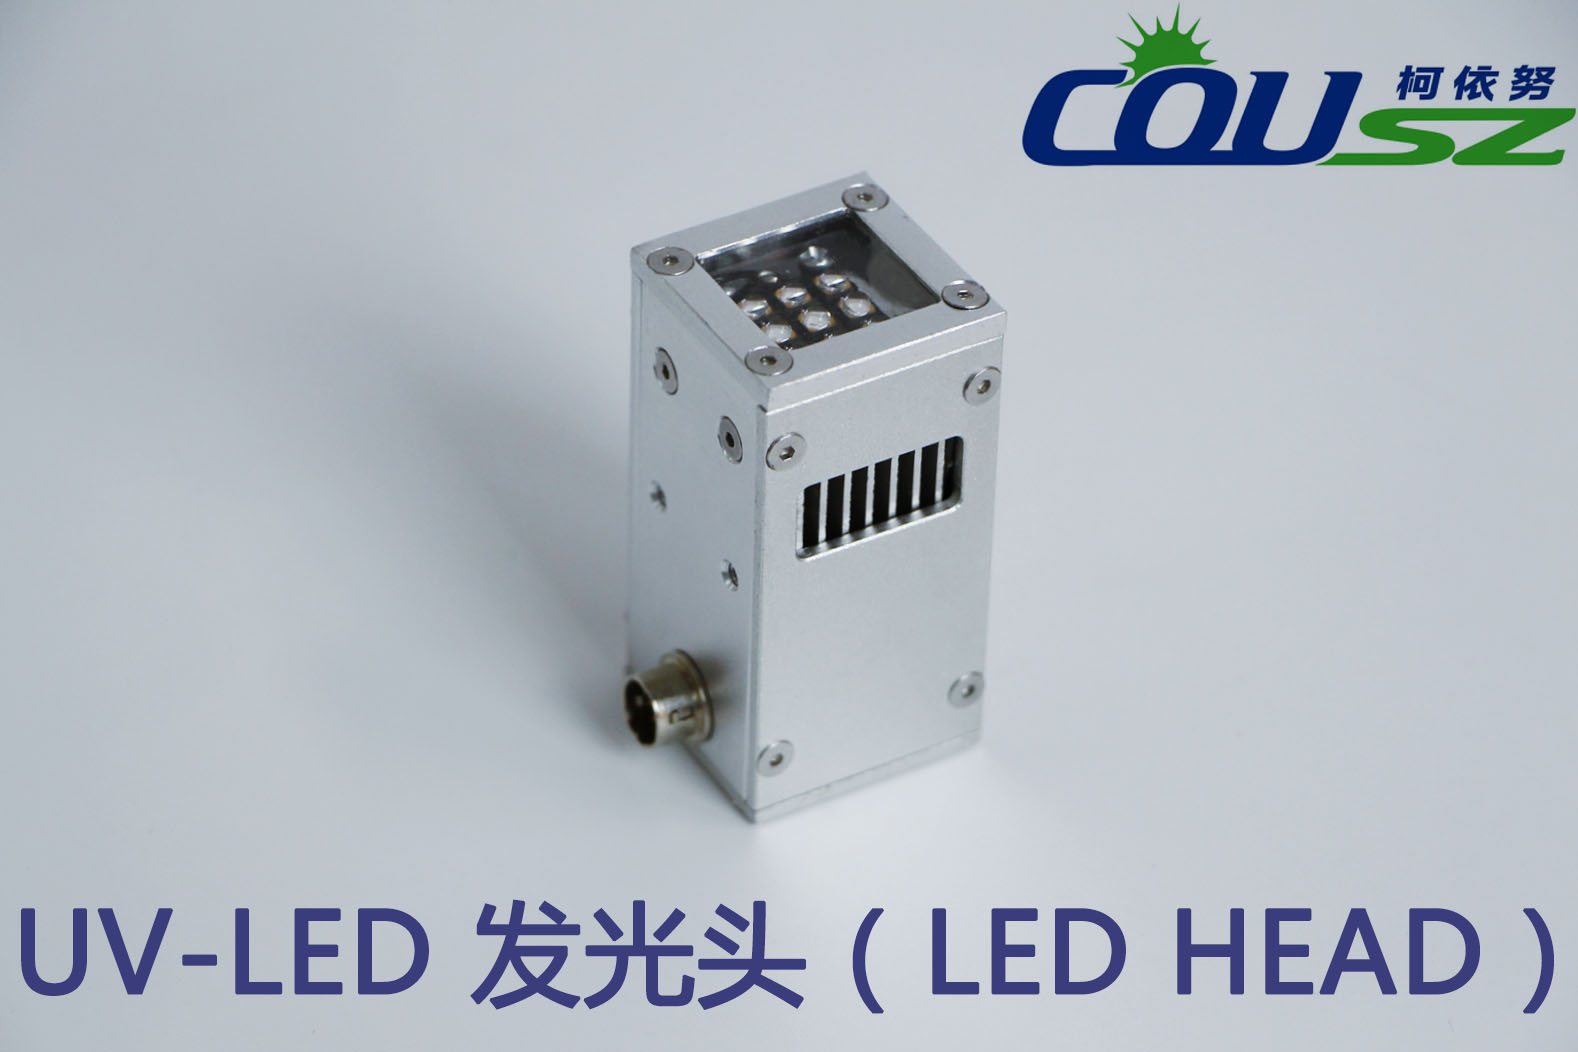 UVLED（紫外LED）会在未来工业生产中扮演重要角色